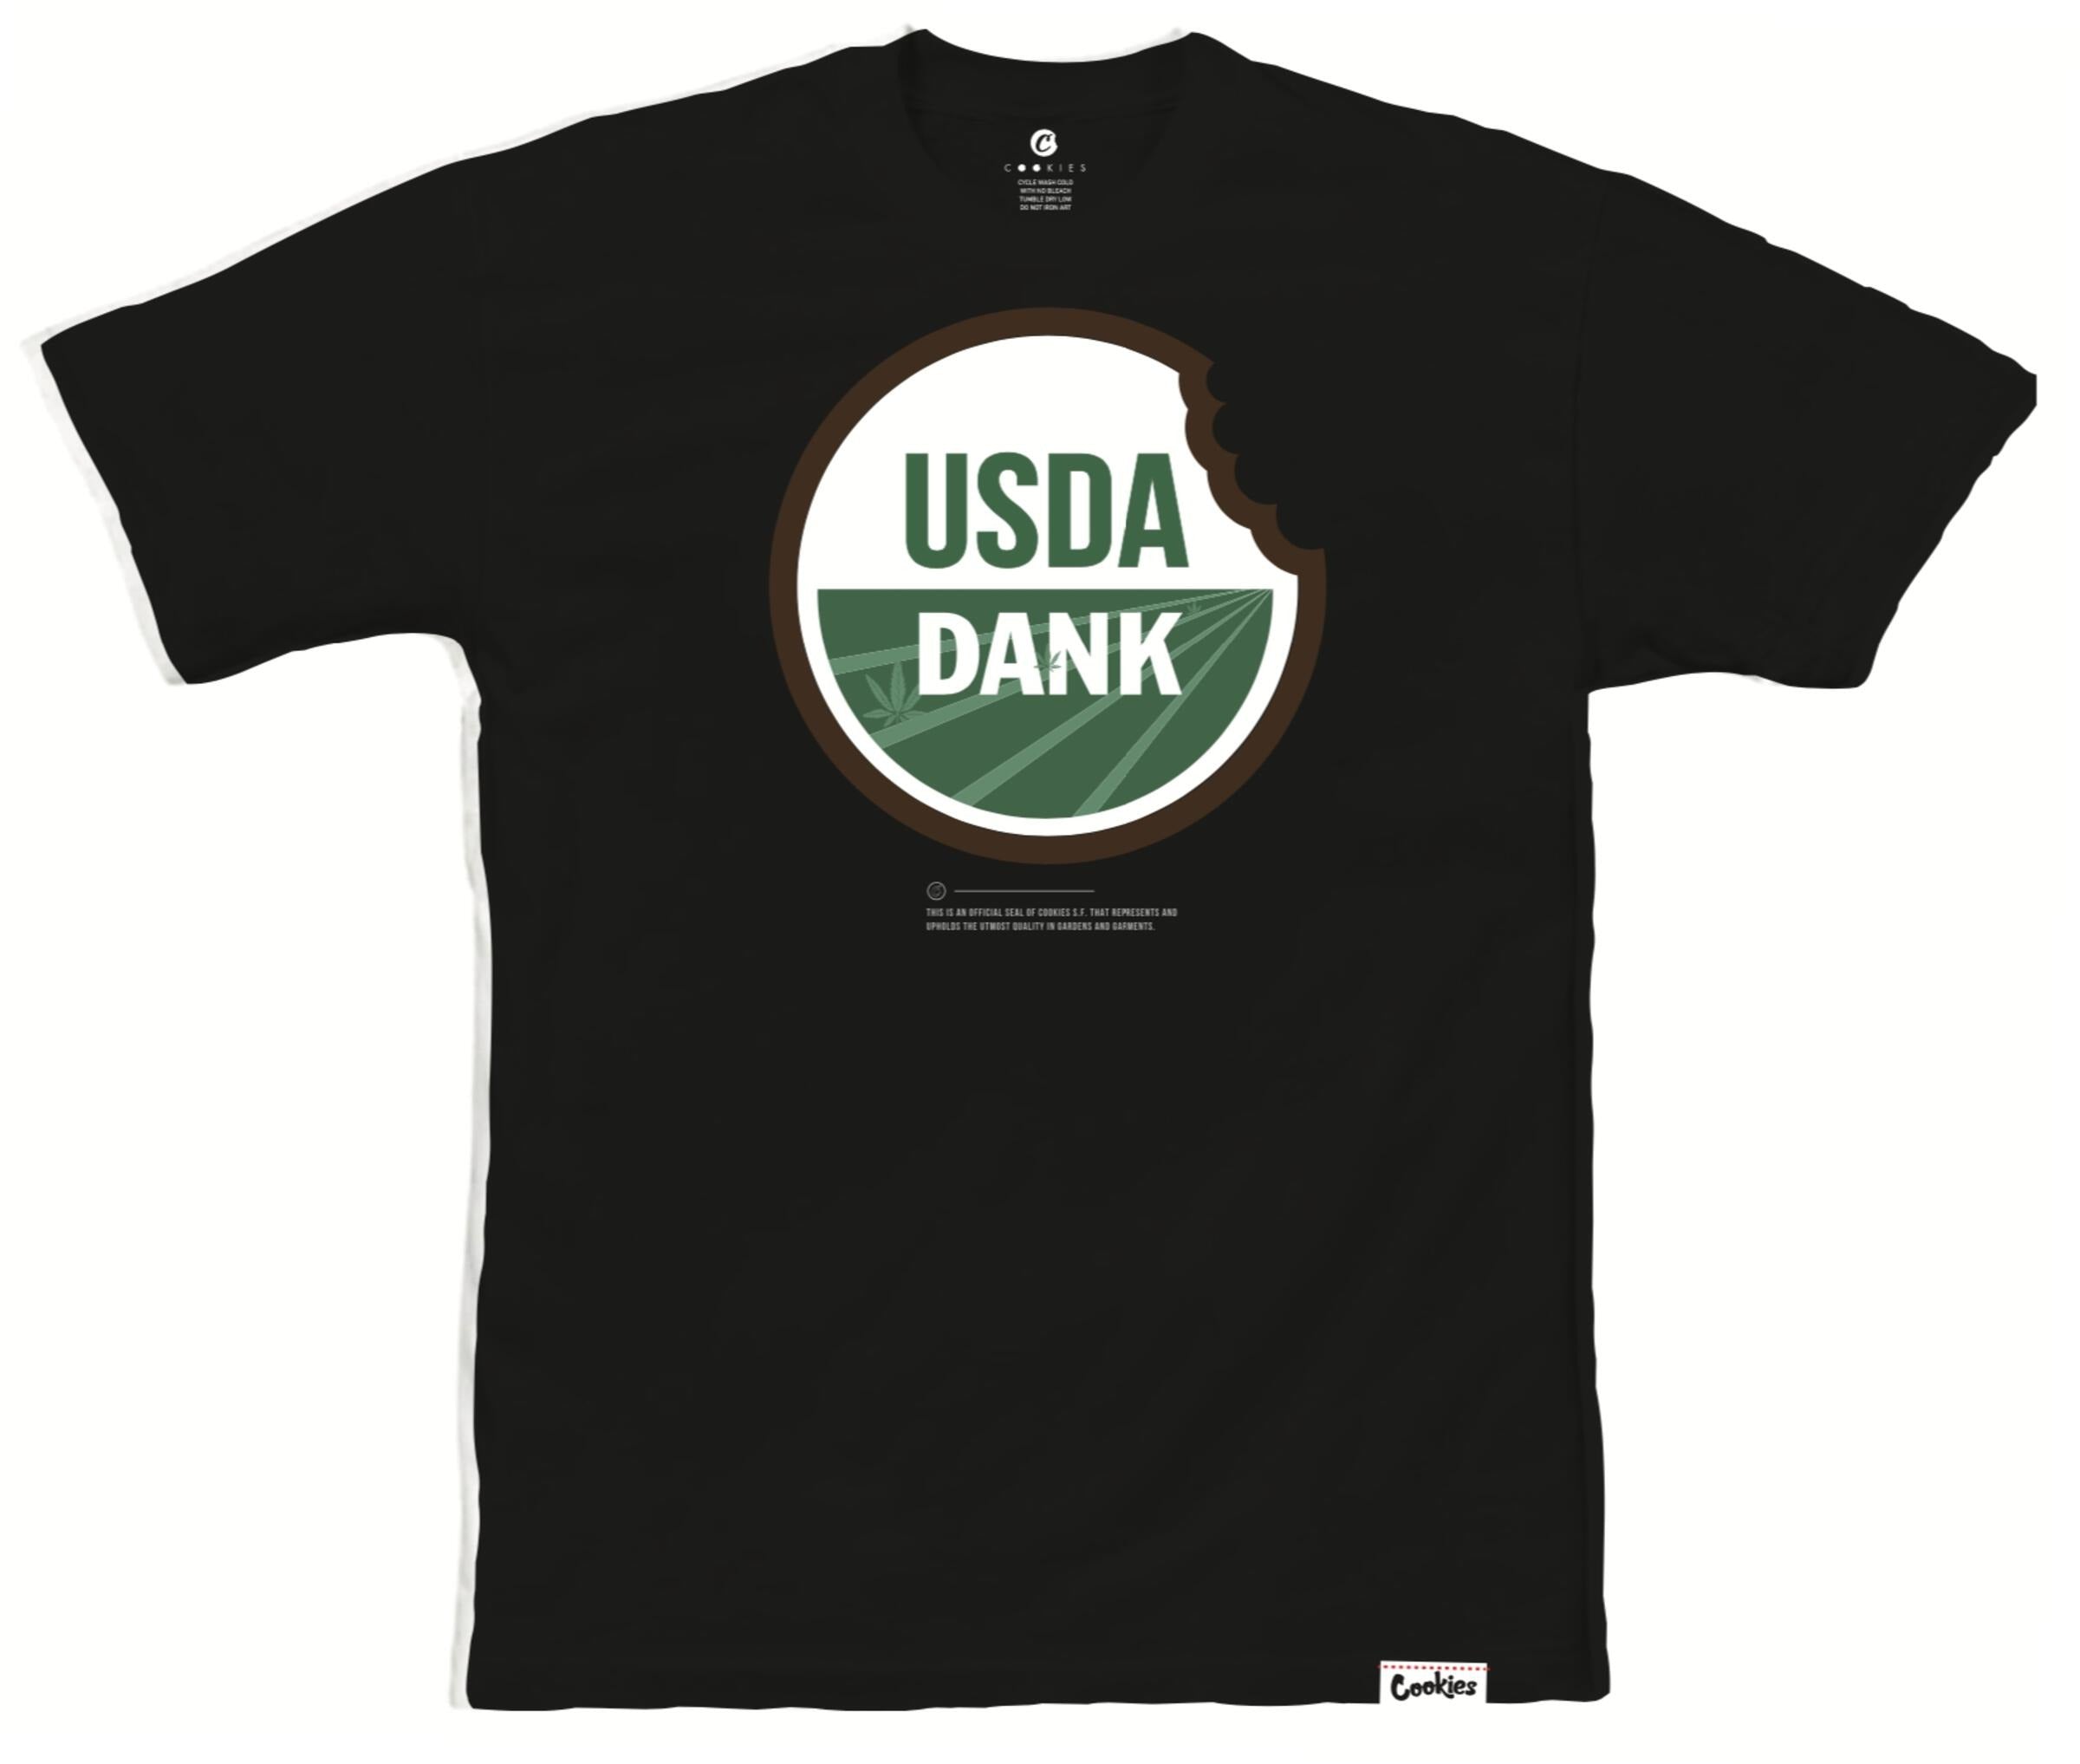 USDA DANK T-SHIRT (BLACK)